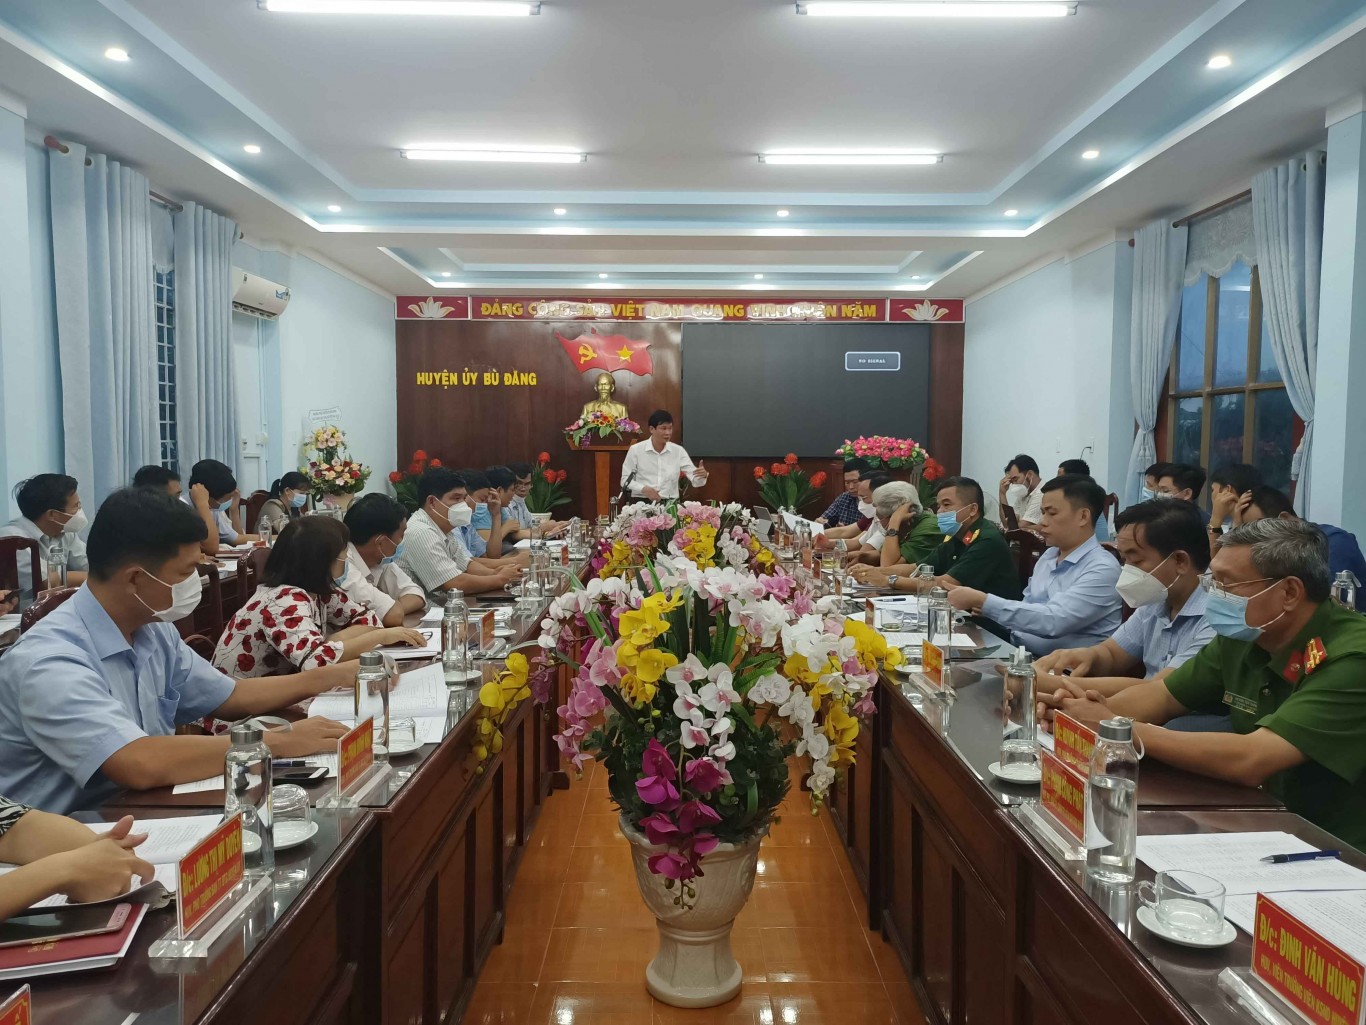 TUV  Bí thư huyện ủy Bù Đăng Vũ Lương đề nghị tiếp tục tiếp thu các ý kiến đóng góp bổ sung vào quy hoạch sử dụng đất đến năm 2030 trên cơ sở phát huy hết lợi thế